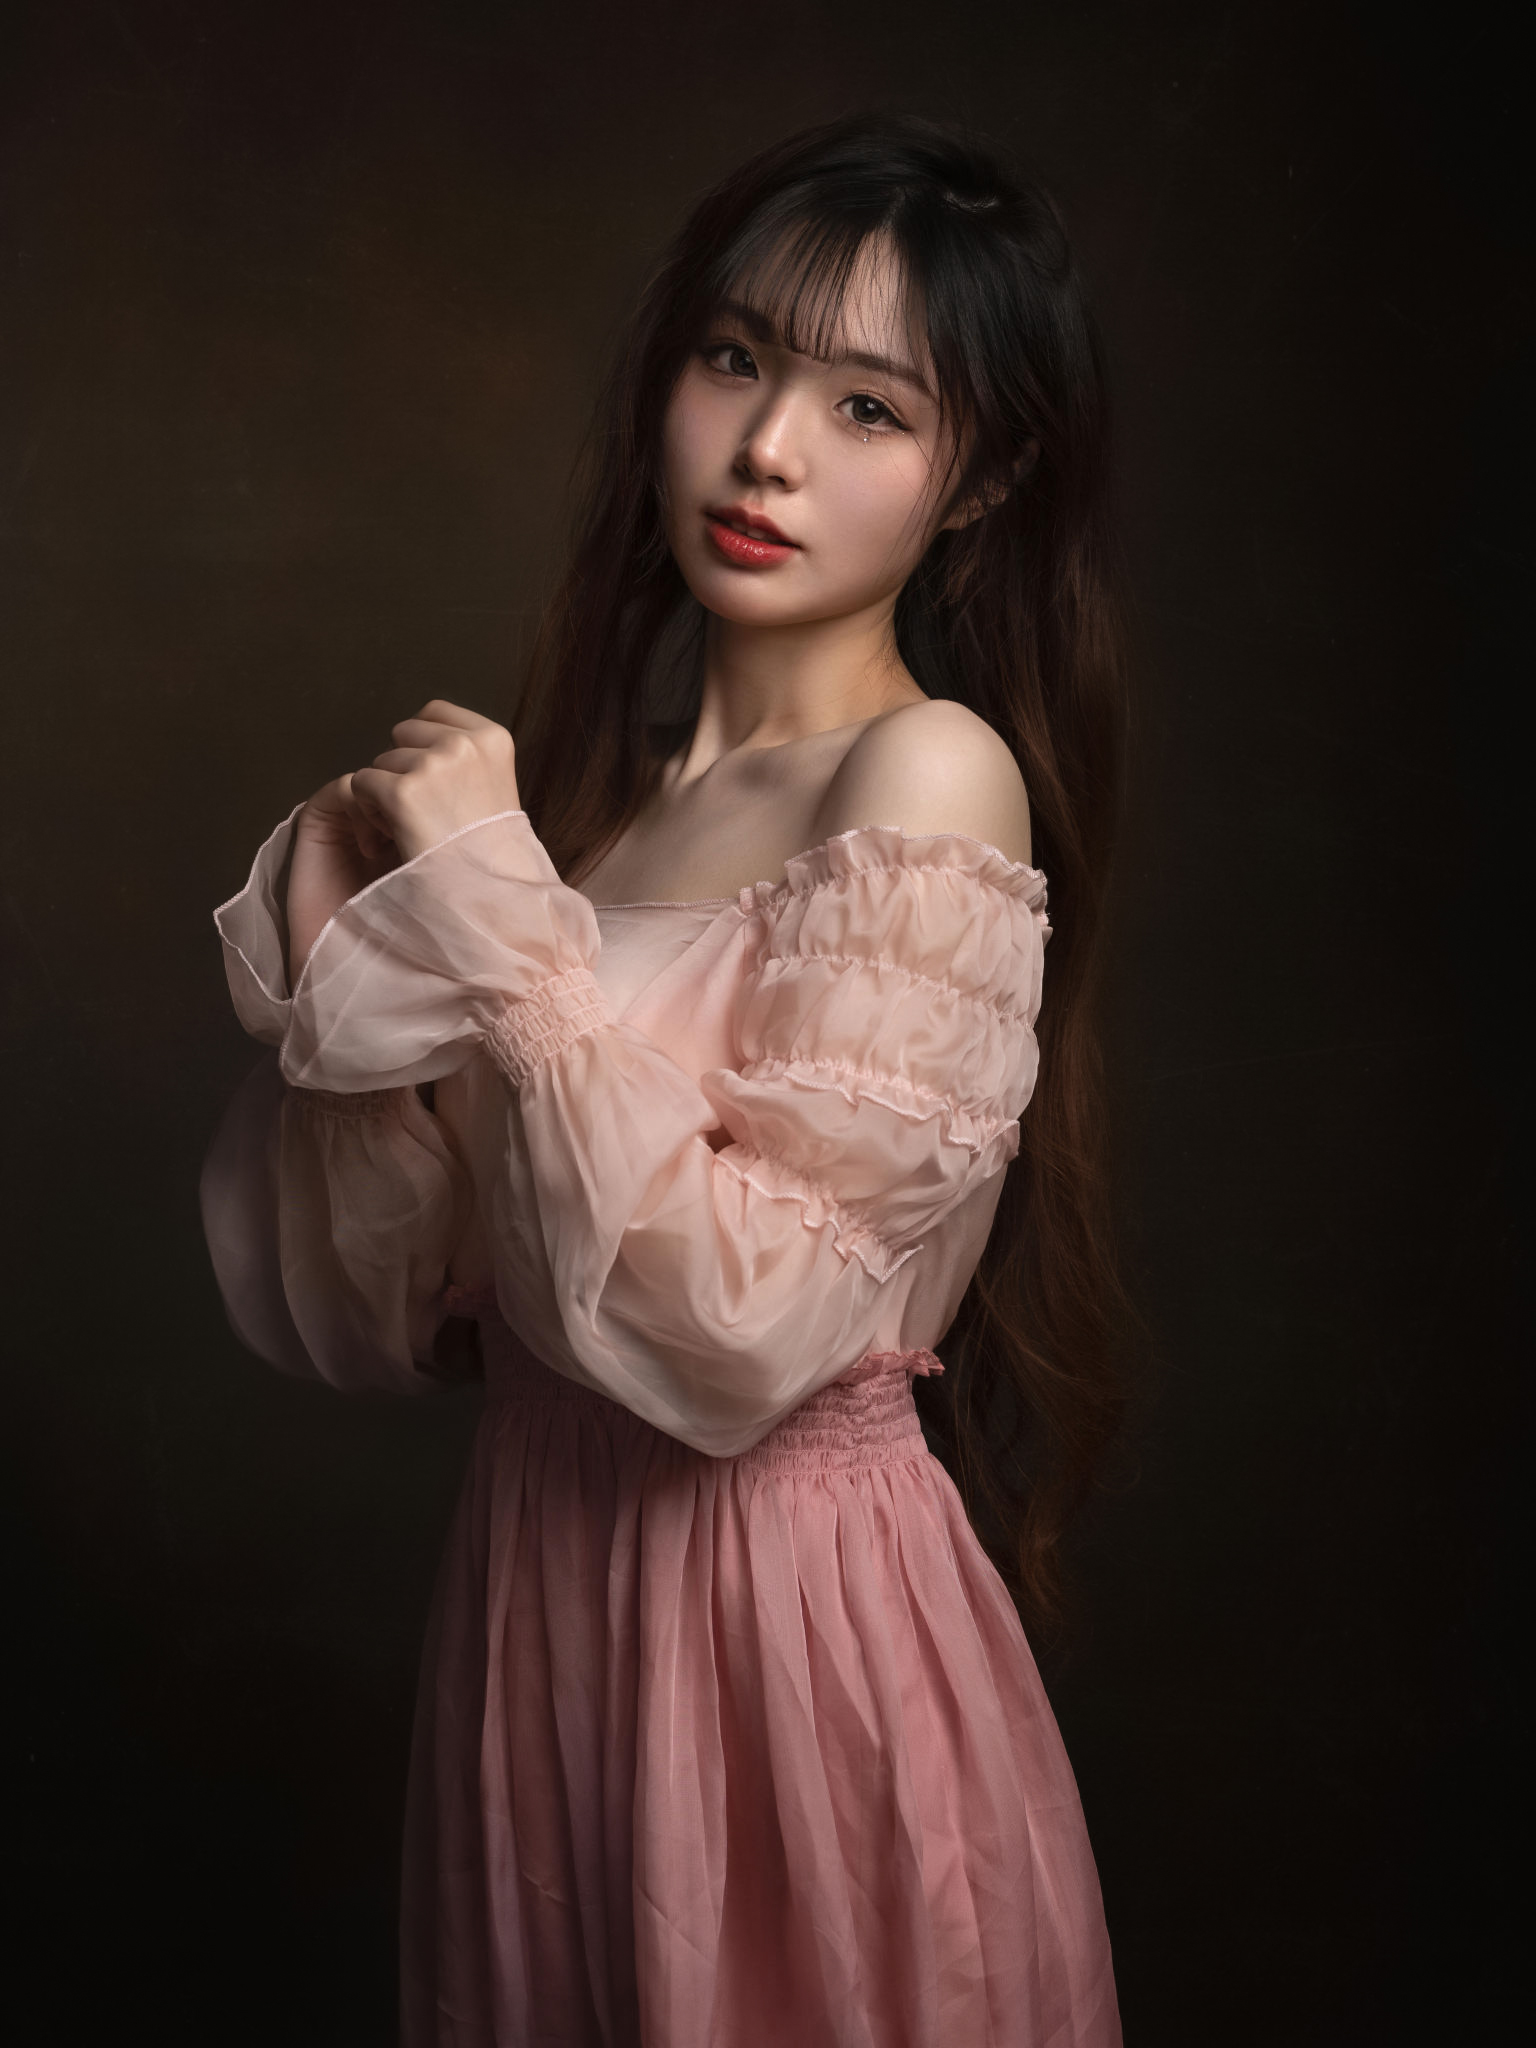 Lee Hu Women Asian Brunette Looking At Viewer Dark Eyes Eyeliner Lipstick Dress Pink Clothing Simple 1536x2048